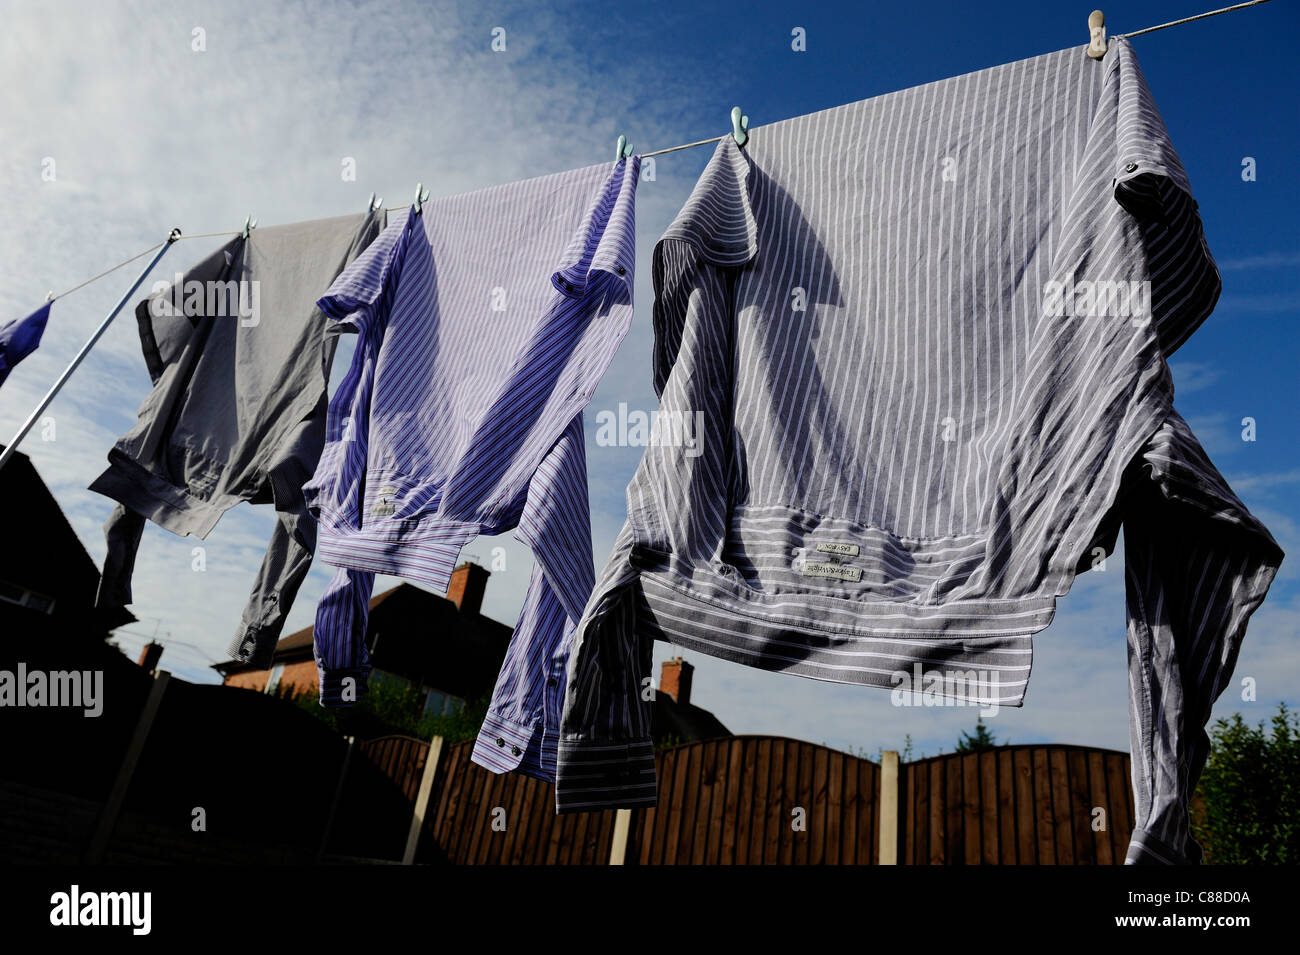 shirts hanging on a washing line england uk Stock Photo